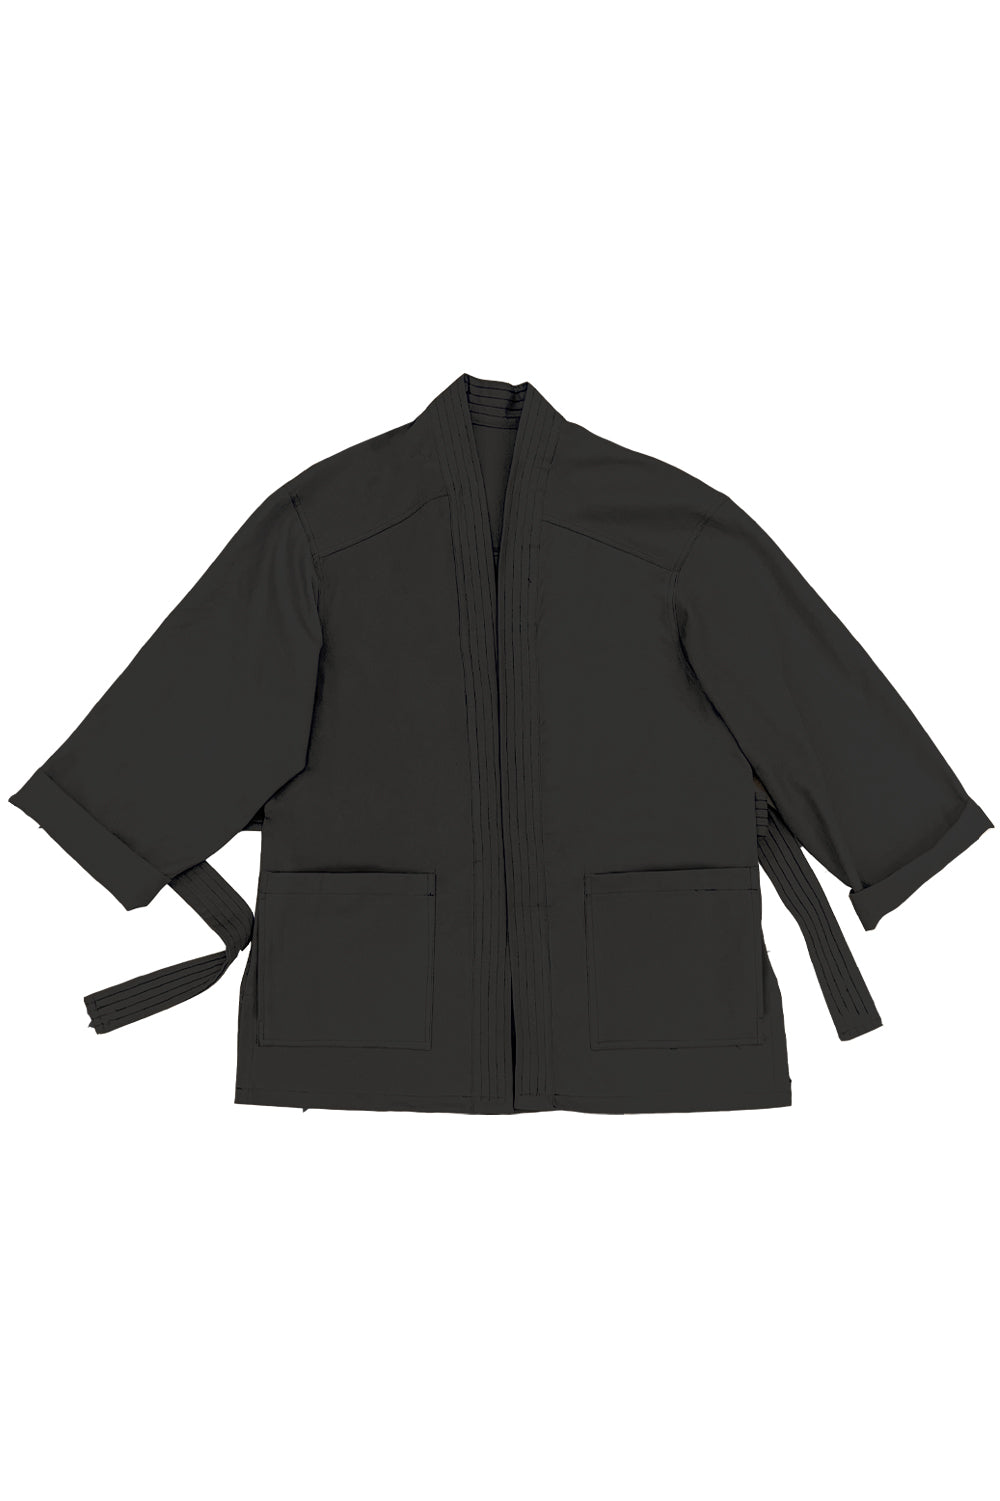 kimono unisex en algodón organico con cierre de cinta negro y dos bolsillos grande en la parte delantera